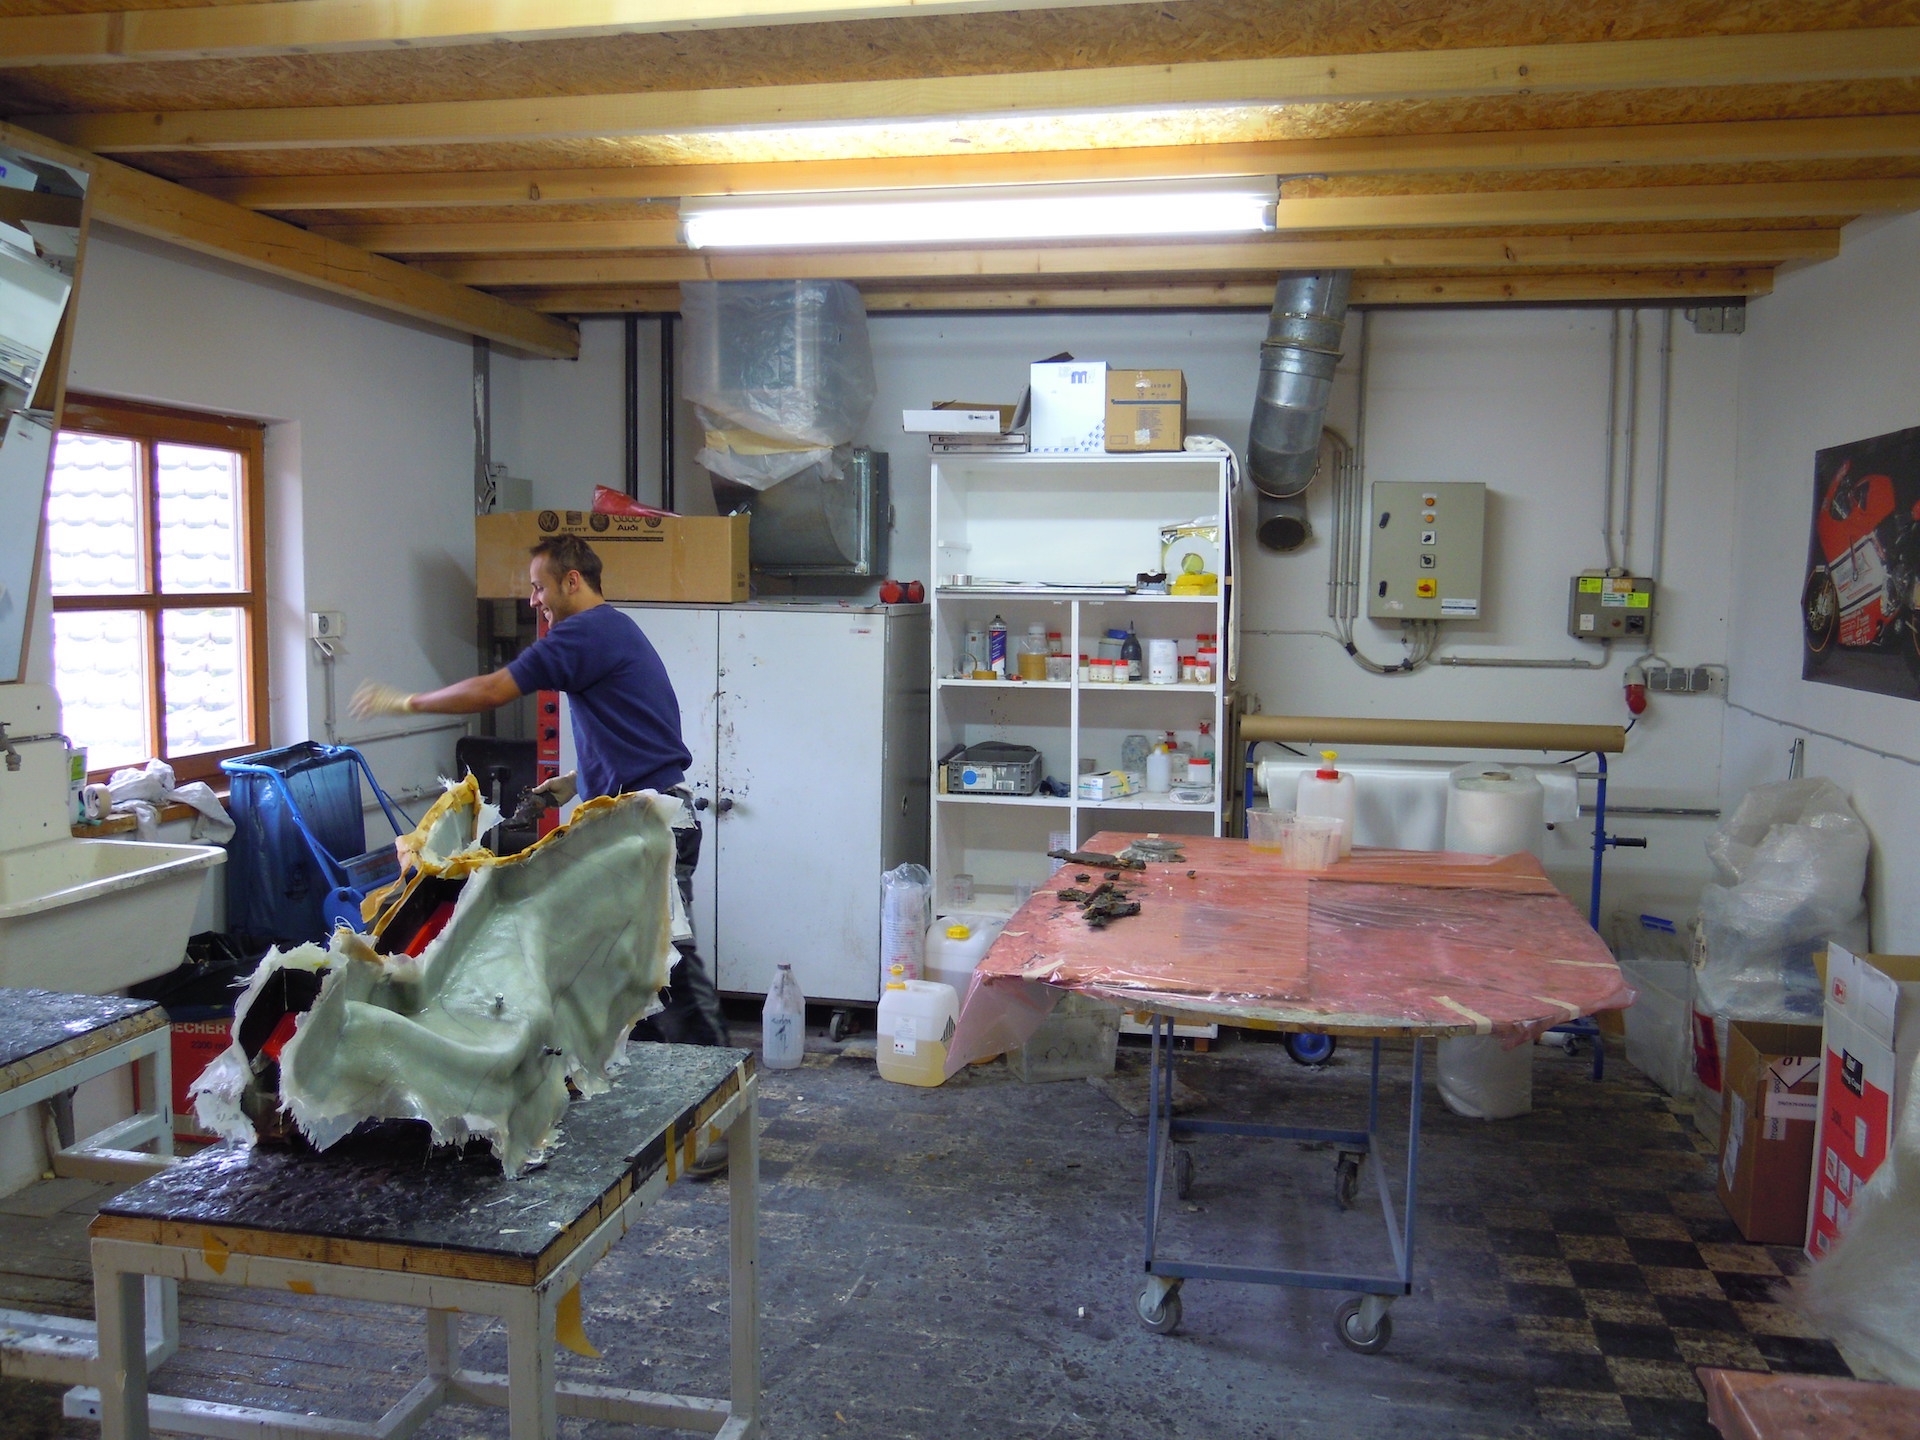 Arbeiten in der Werkstatt2 - Carbon Sigl